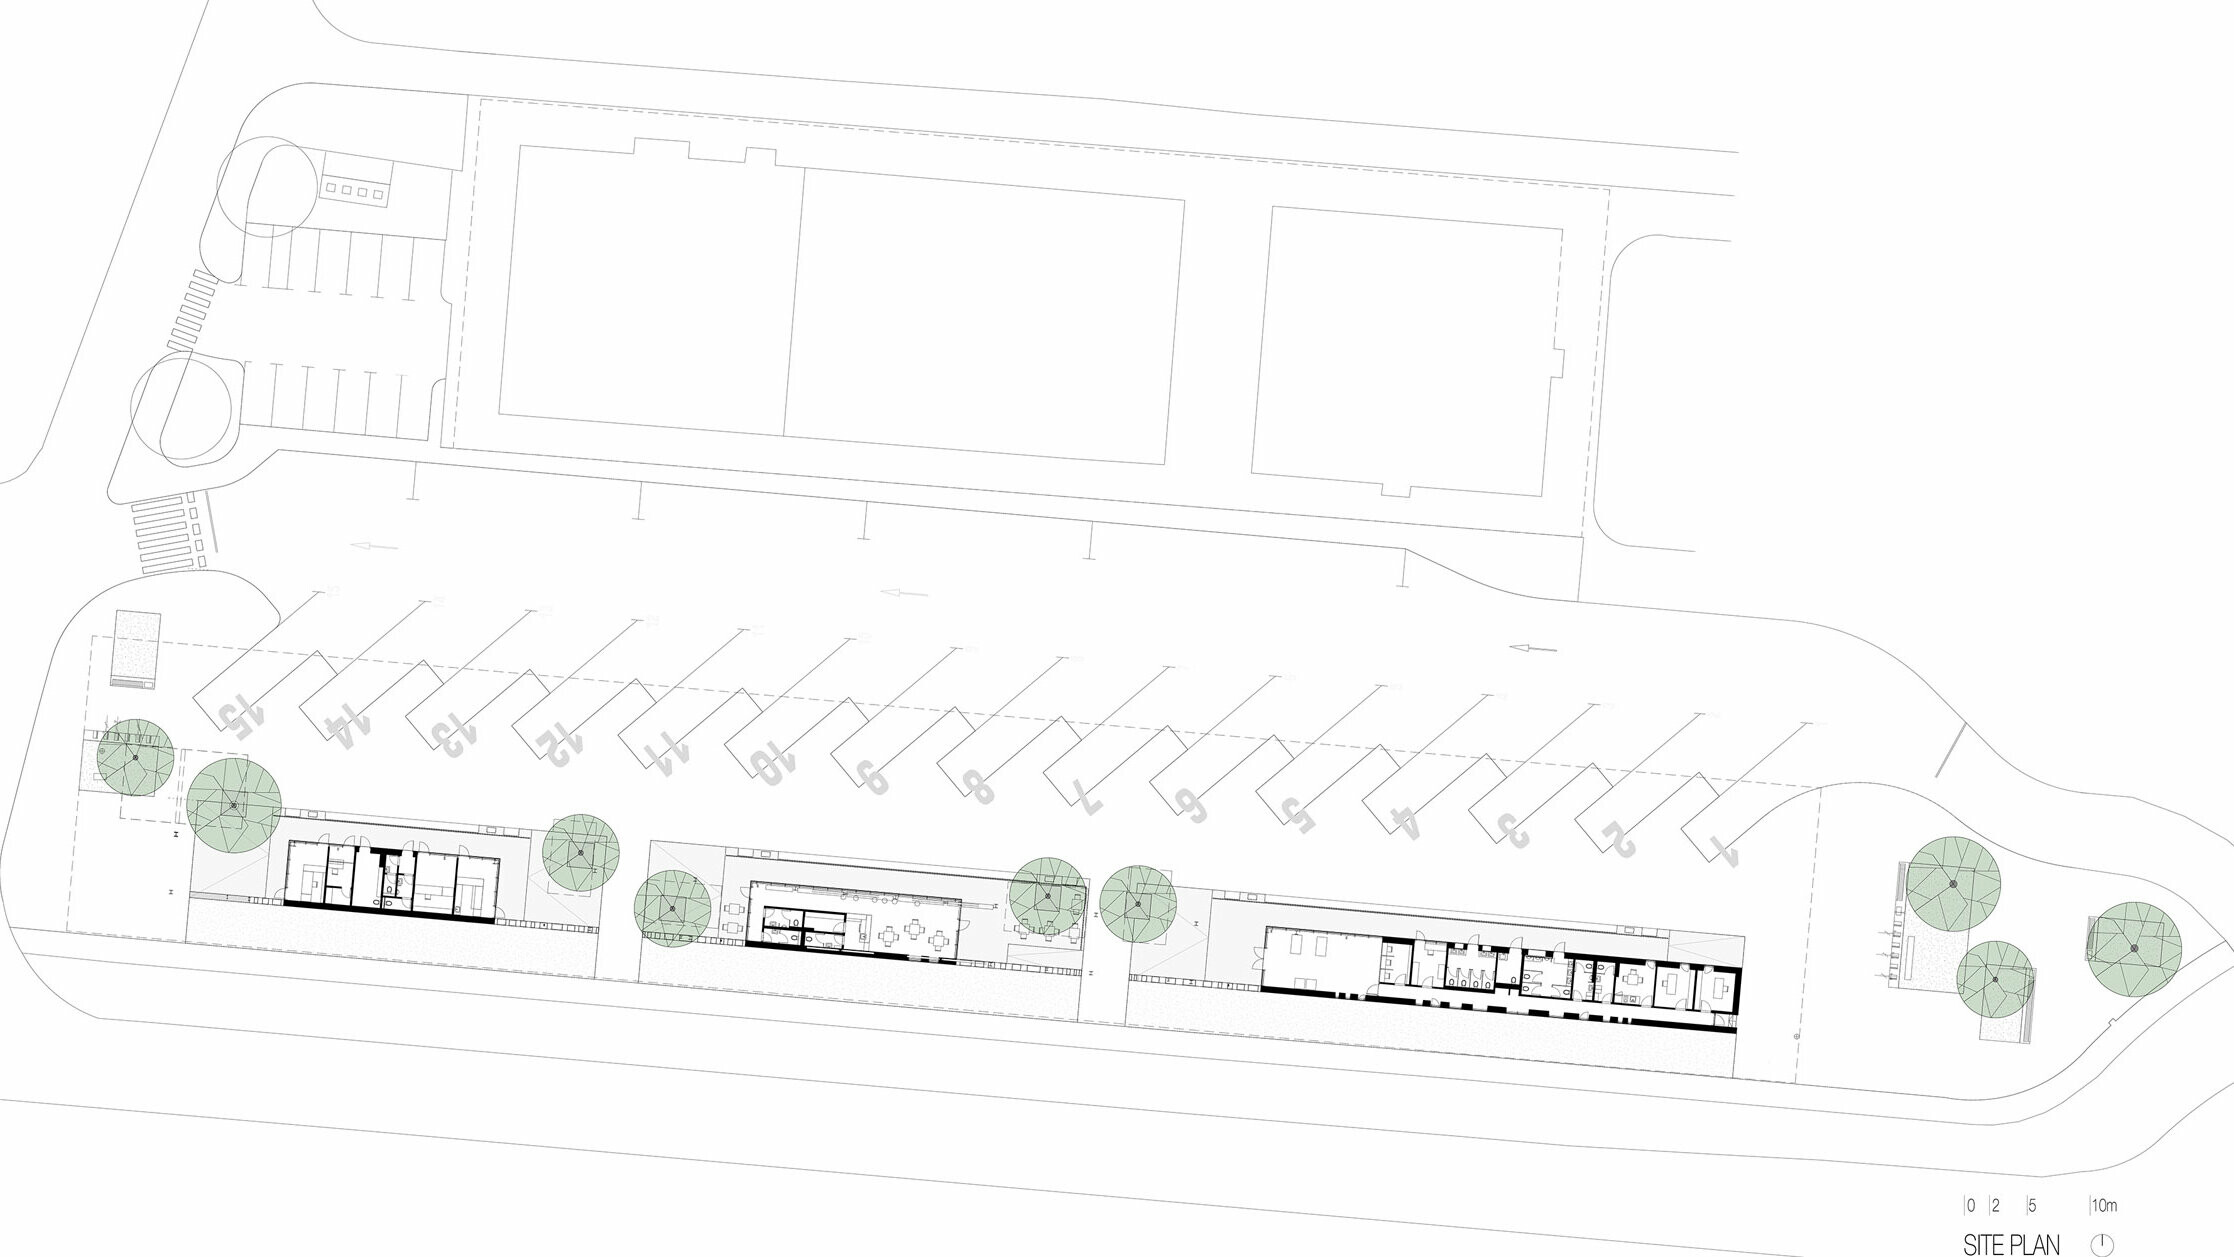 Le plan de situation est une vue d'ensemble du hall de la gare routière « Autobusni Kolodvor Slavonski Brod » en Croatie. Ce plan montre la disposition des quais d'autobus et des emplacements de stationnement, ainsi que des bâtiments et des espaces verts sur le site. Au centre du plan, on peut voir les bâtiments du hall de gare, percés de plusieurs arbres. Les quais sont numérotés et disposés le long de la partie supérieure du plan, tandis que les places de stationnement sont situées dans la zone inférieure. Le plan de situation représente clairement l'ensemble du complexe et ses éléments structurels, tels que les voies de cheminement, les aires de stationnement et la végétation.